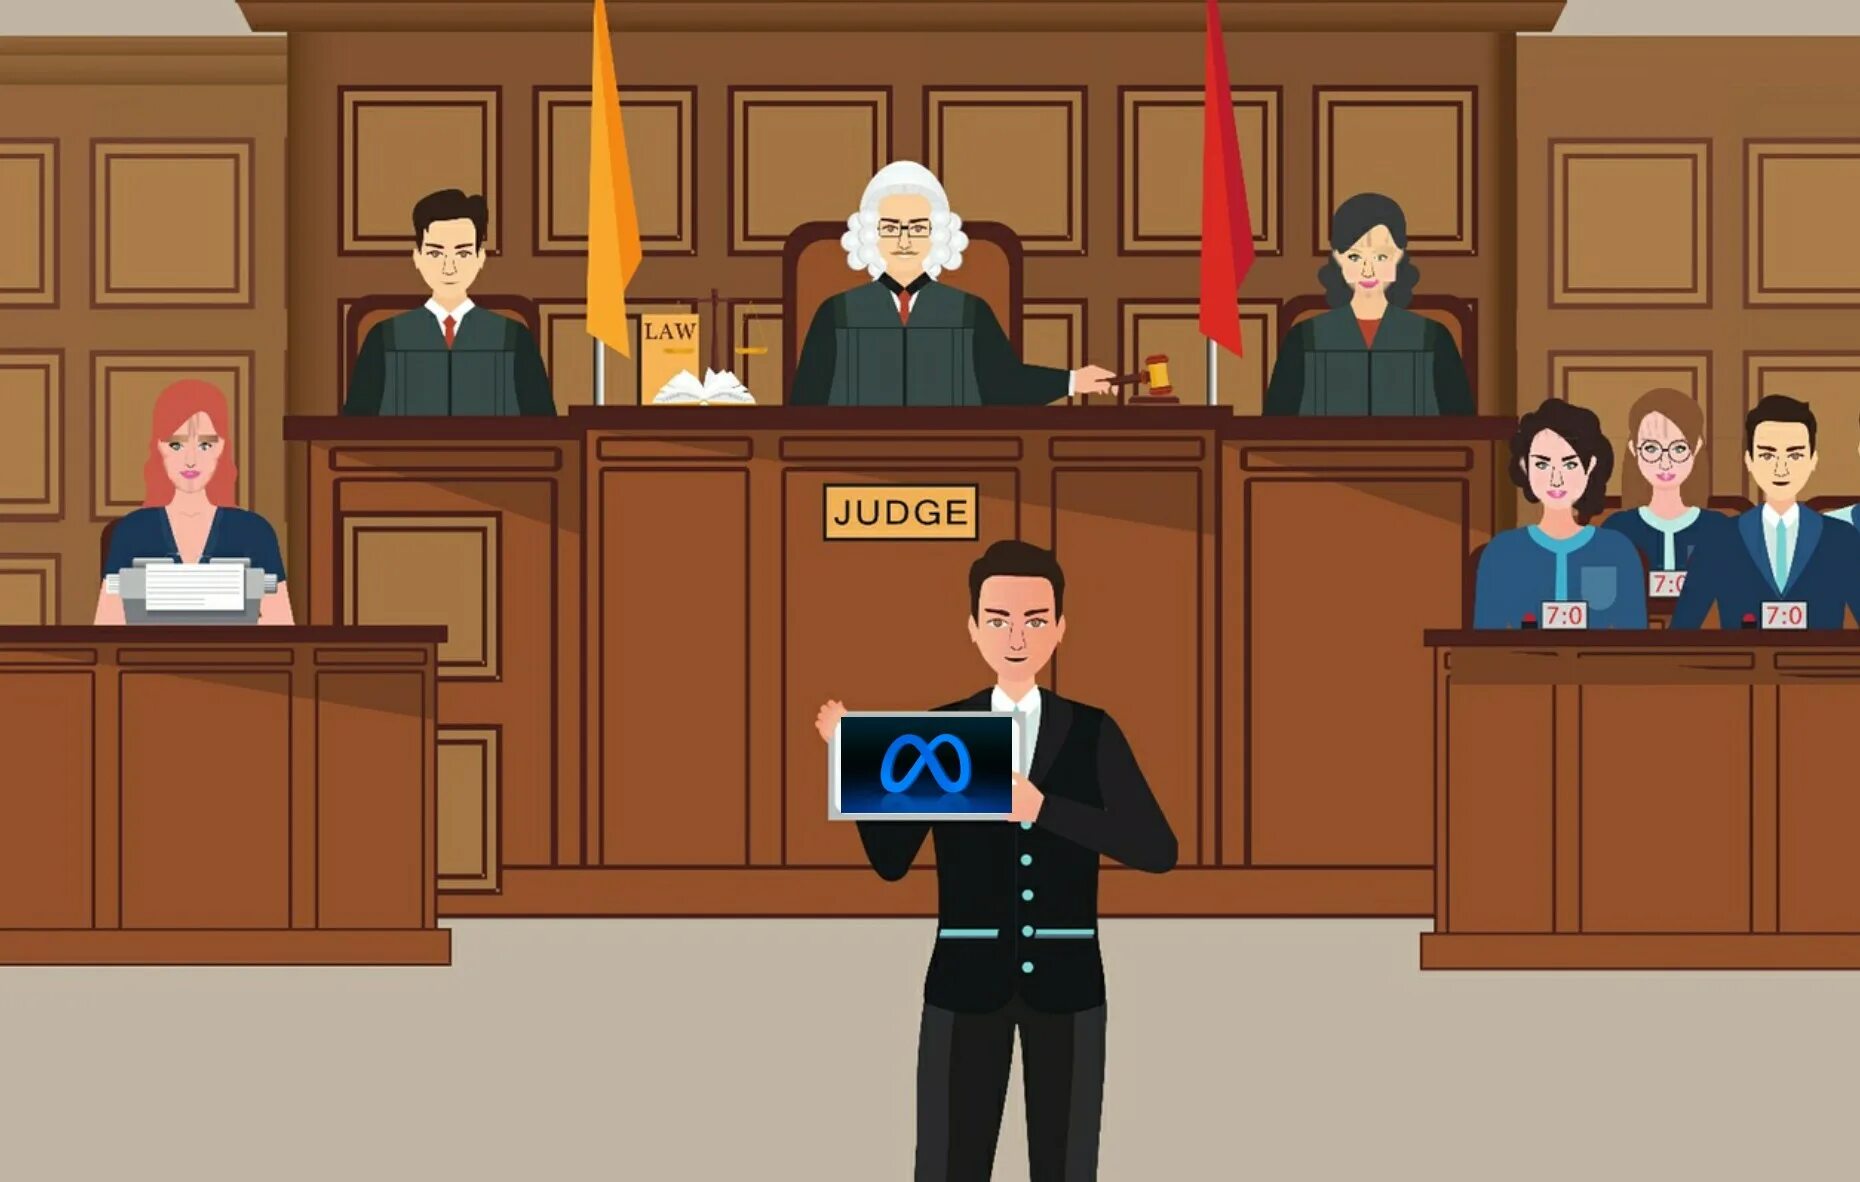 Адвокат на судебном заседании. Суд присяжных. Судебное заседание иллюстрации. Адвокат в суде иллюстрация.